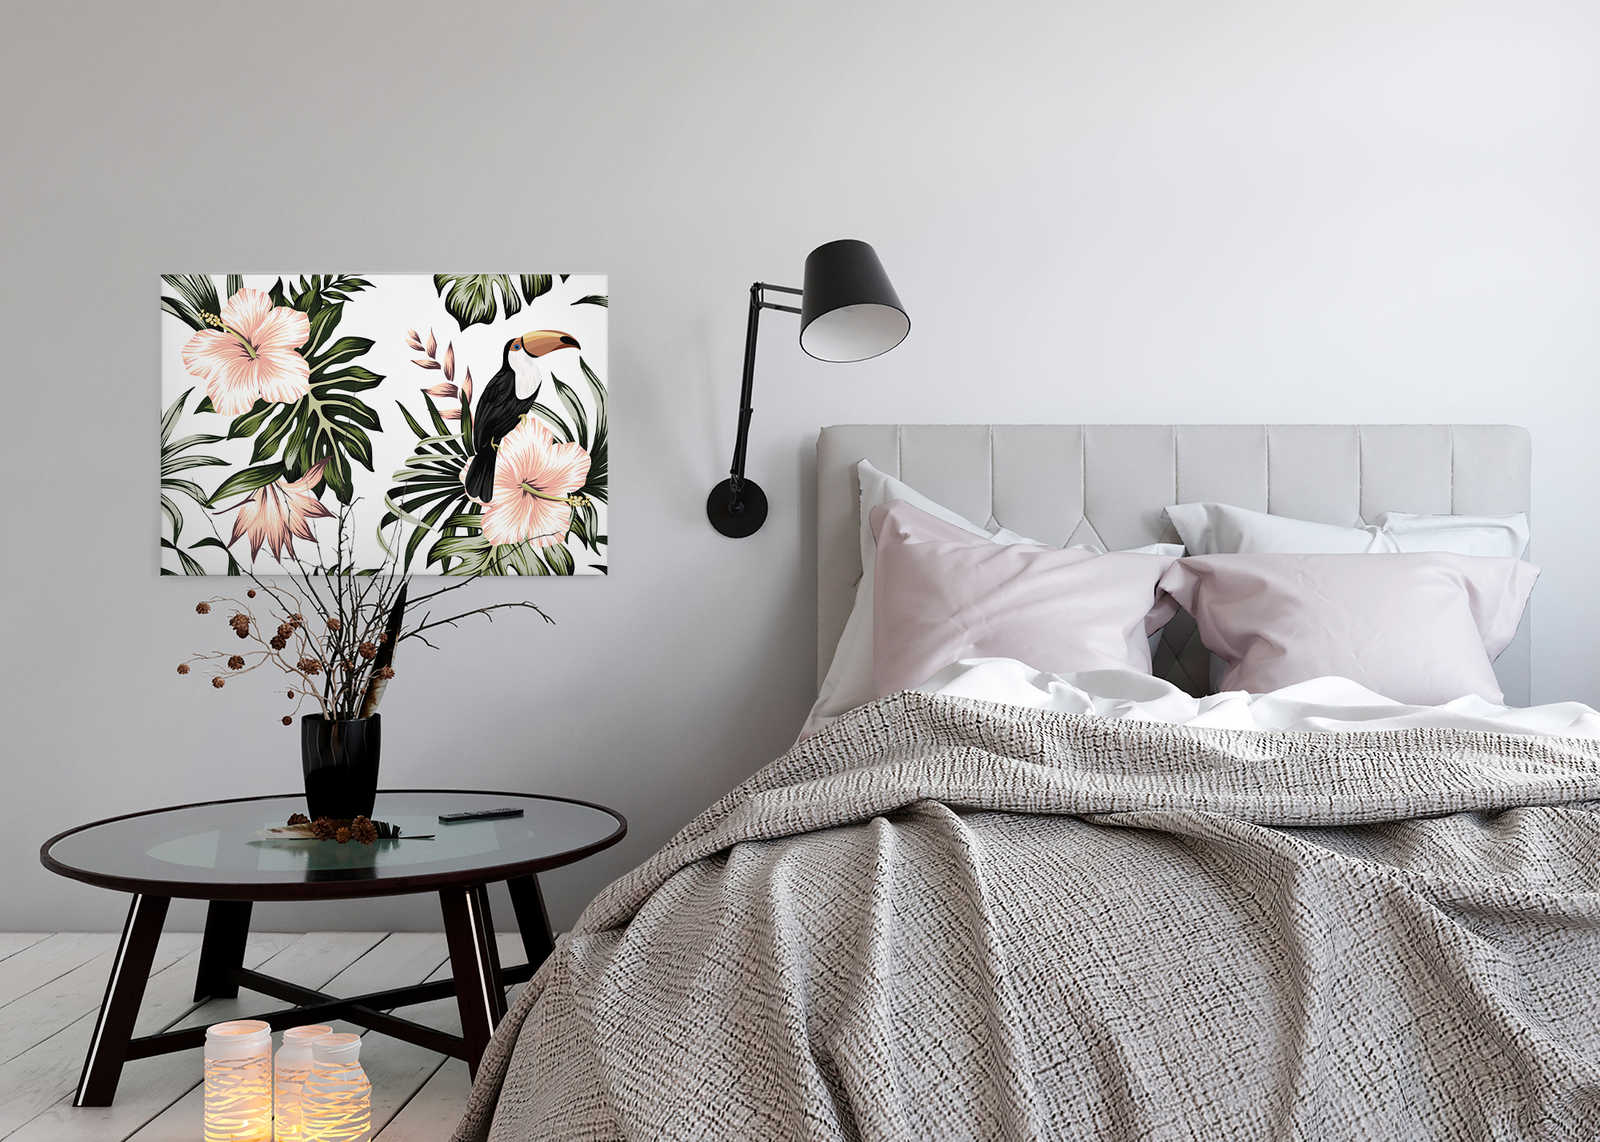             Toile avec plantes de la jungle et pélican | Blanc, Rose, Vert - 0,90 m x 0,60 m
        